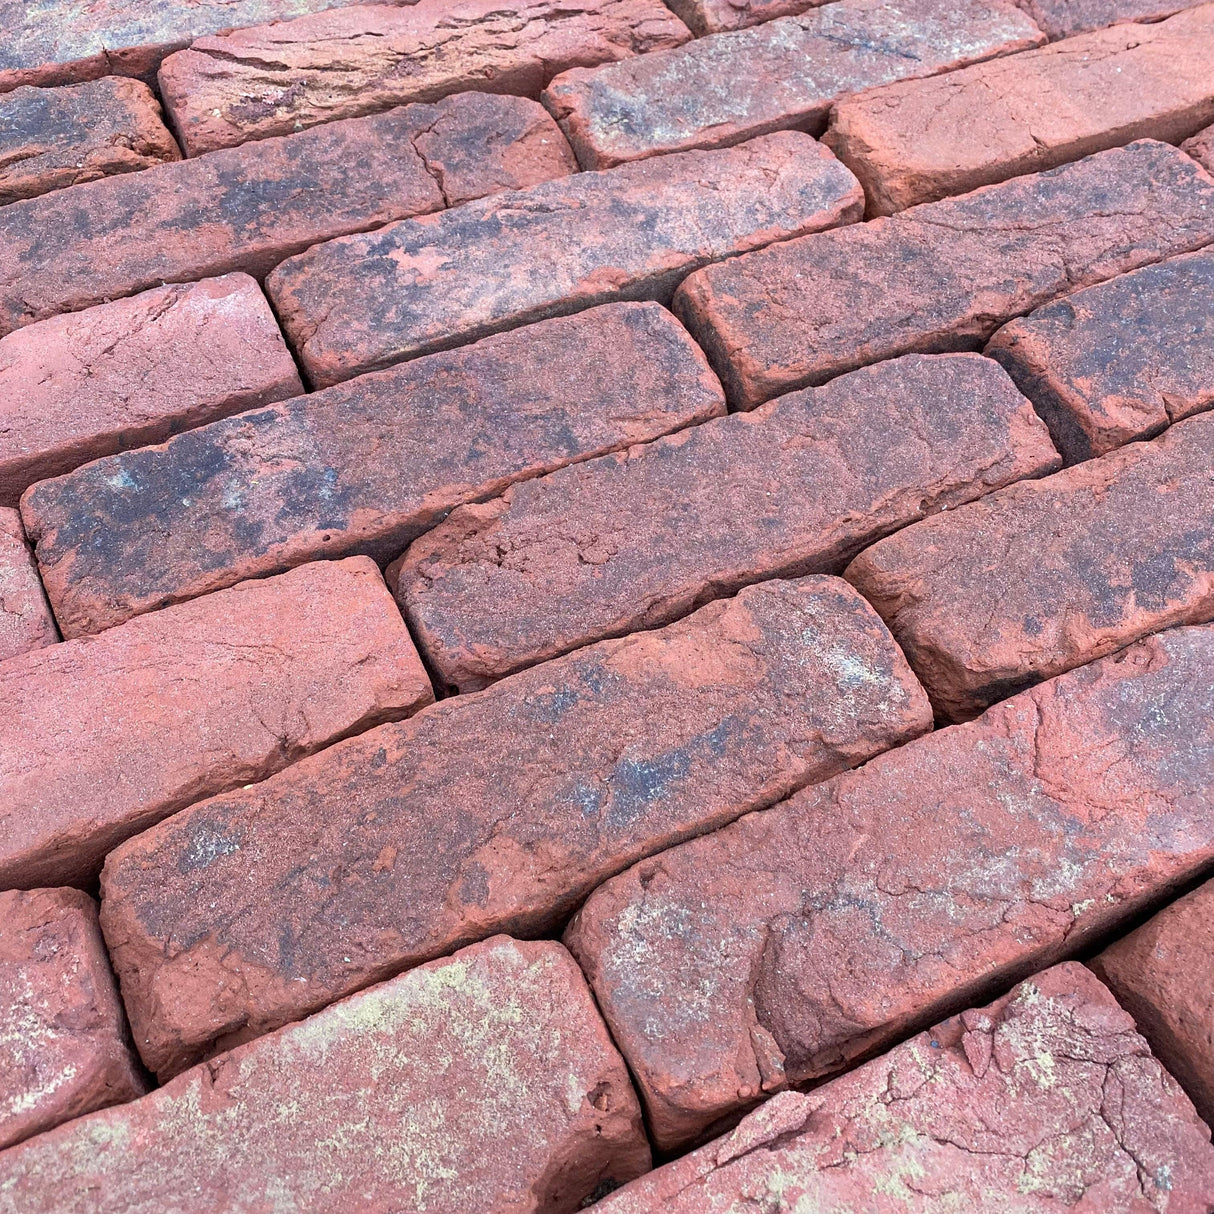 Reclamation Cheshire Handmade Brick - Reclaimed Brick Company